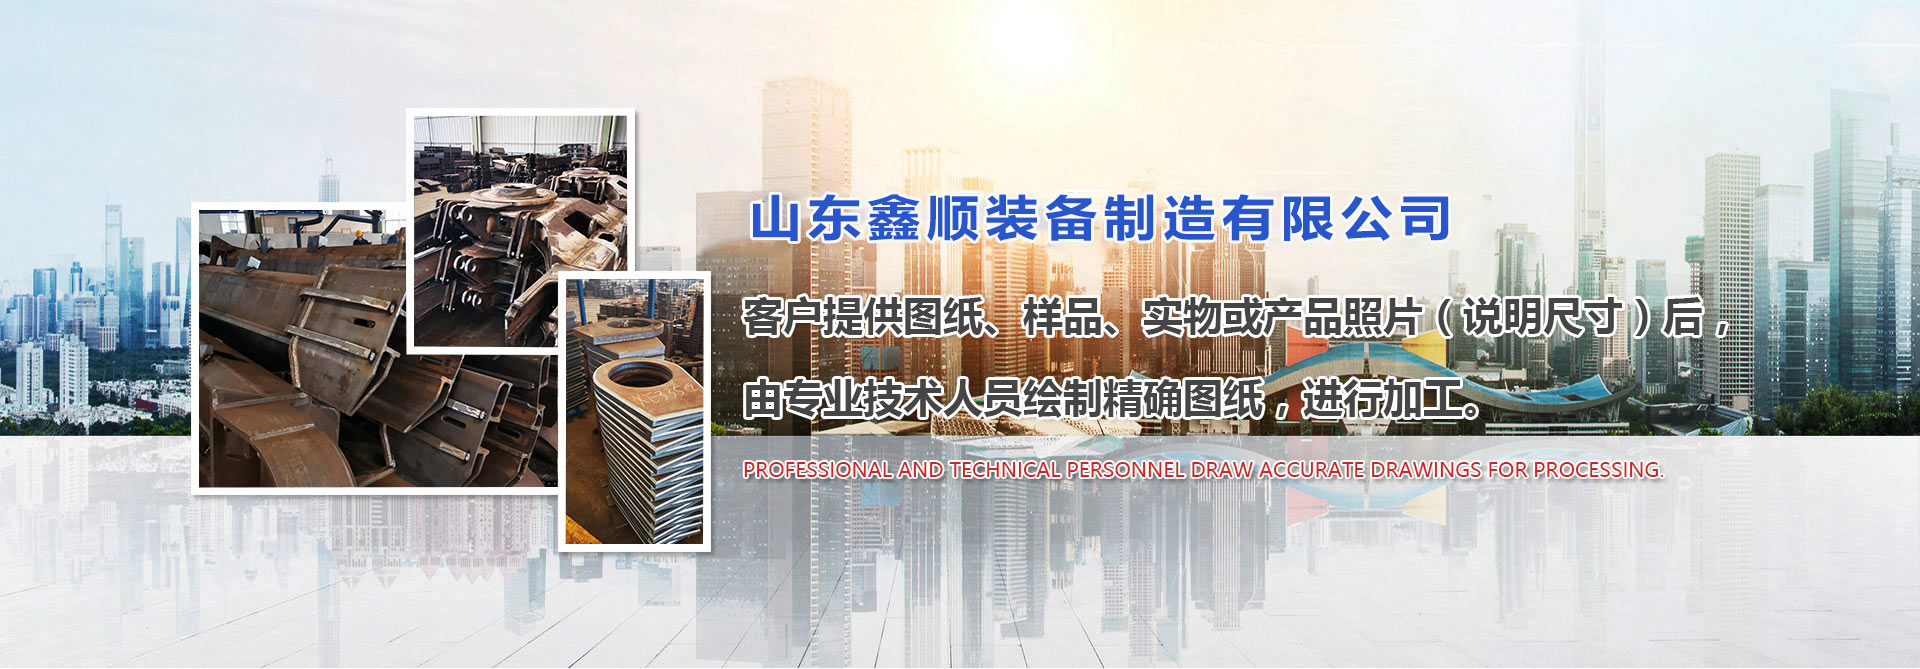 上海宣一泵�y有限公司